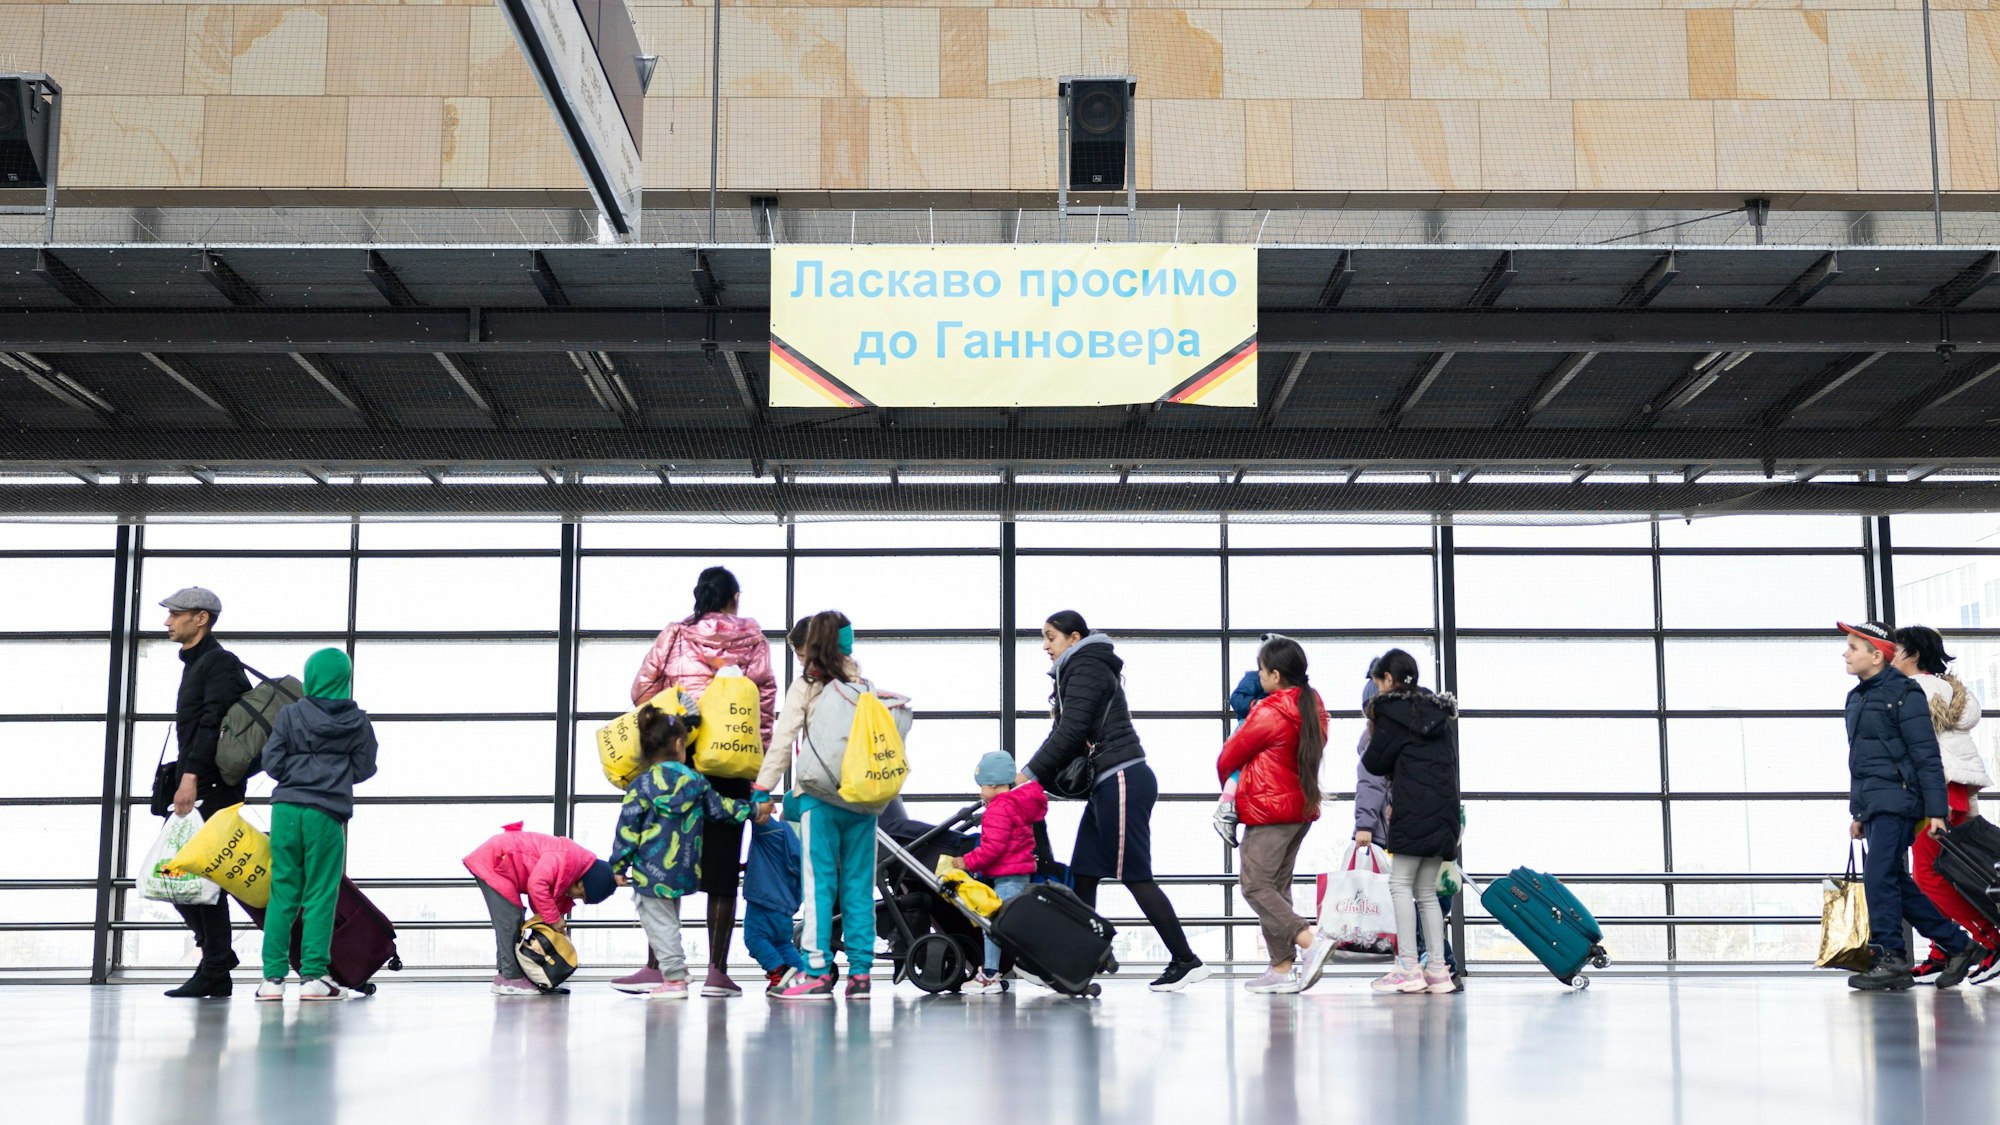 Geflüchtete aus der Ukraine laufen nach ihrer Ankunft durch die Eingangshalle vom Messebahnhof Laatzen in Hannover.